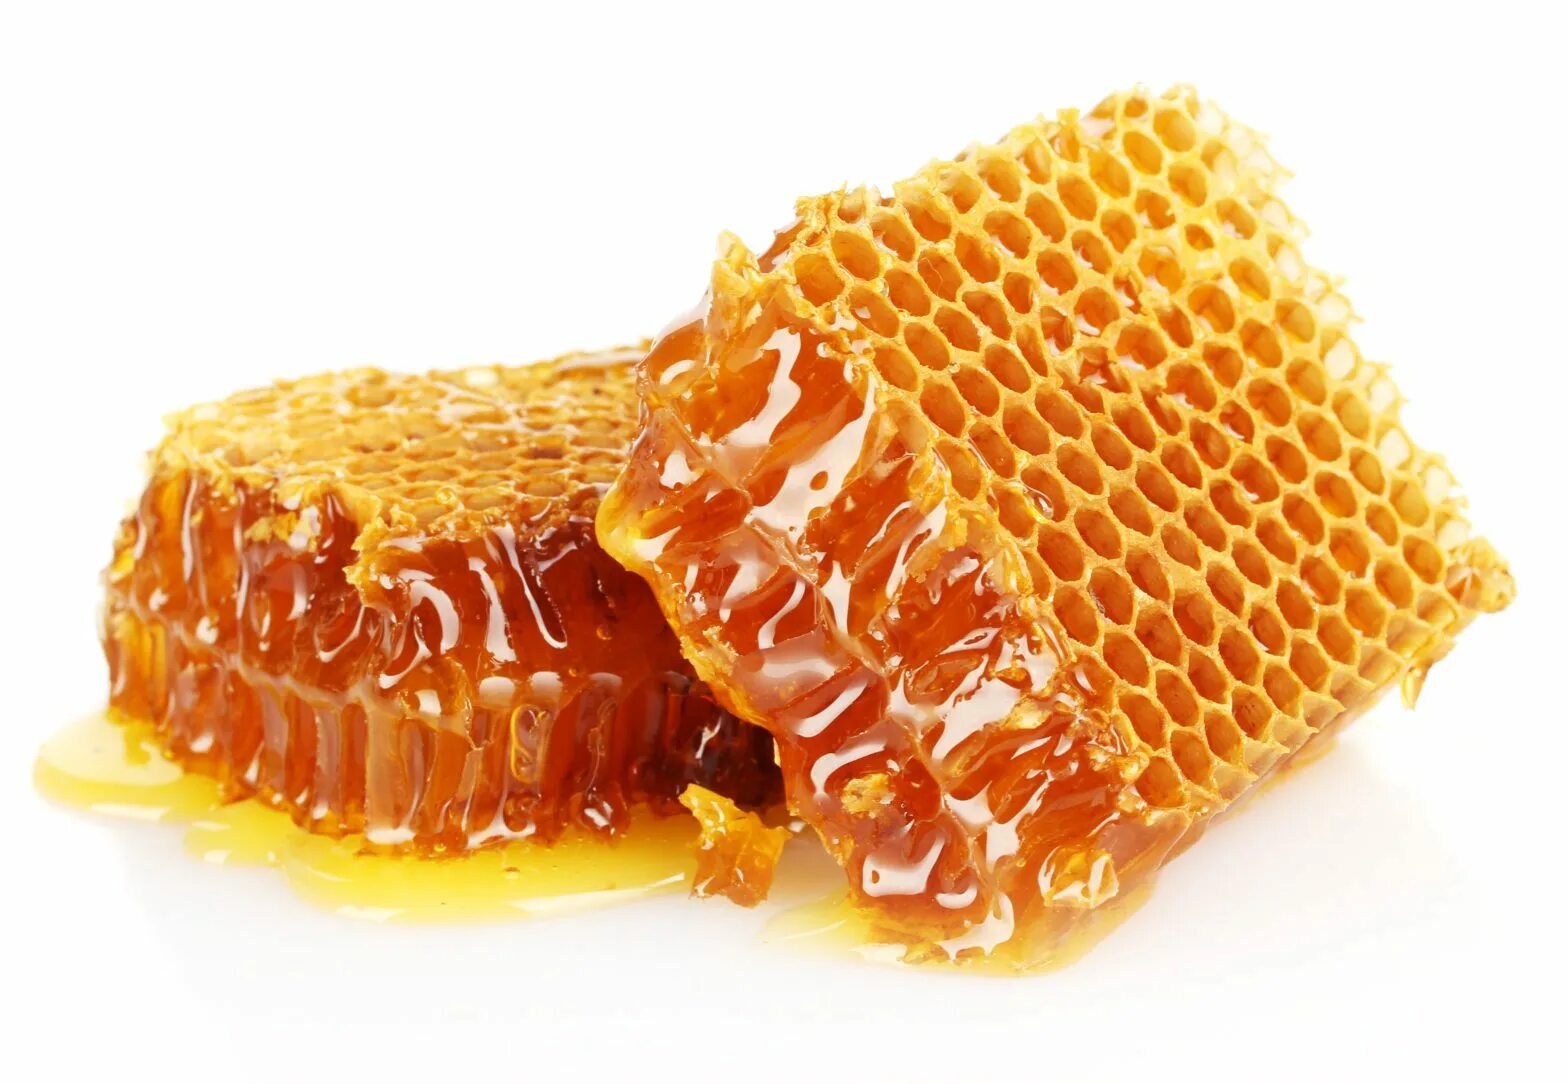 Honey медовый. Мёд в сотах. Медовые соты. Цветочный мед в сотах. Пчелиные соты с медом.